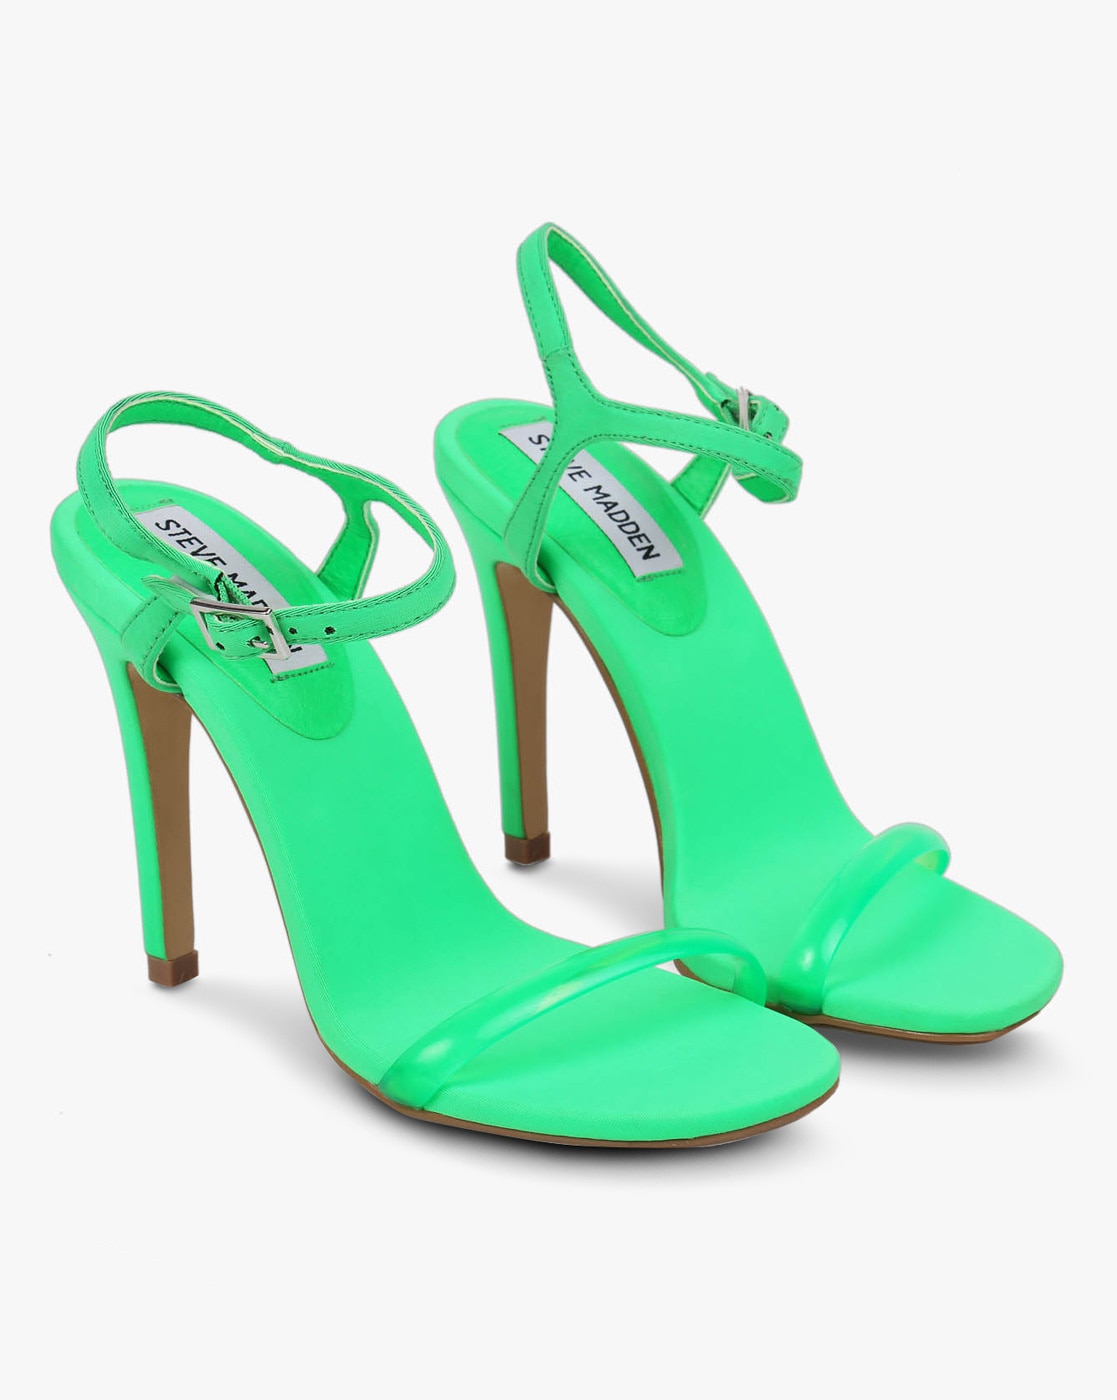 stiletto heels online